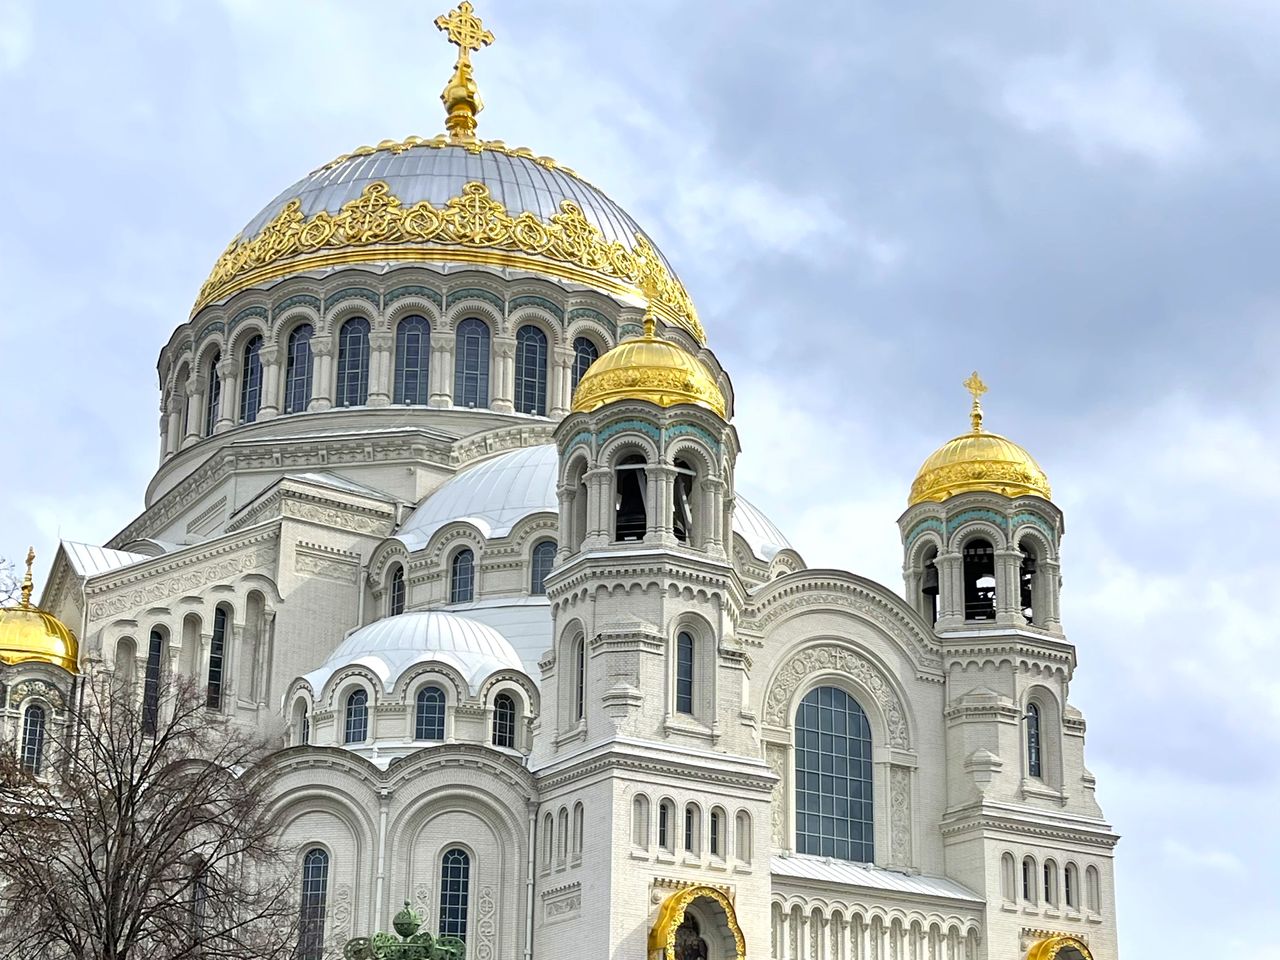 От Морского собора в Петербурге до Кронштадта | Цена 12540₽, отзывы, описание экскурсии